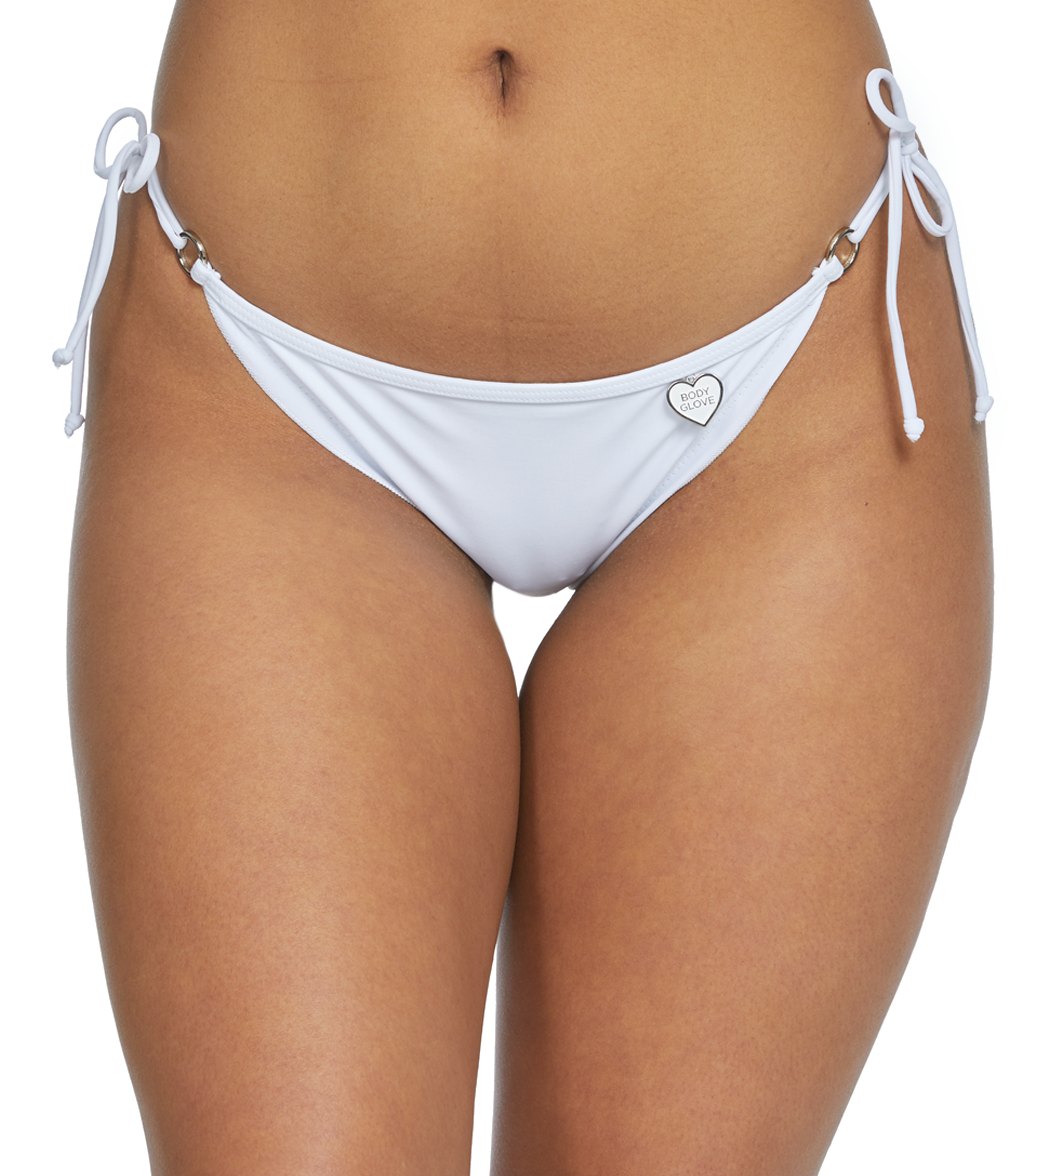 Body Glove Swimwear Smoothies Brasilia Tie Side Bikini Bottom